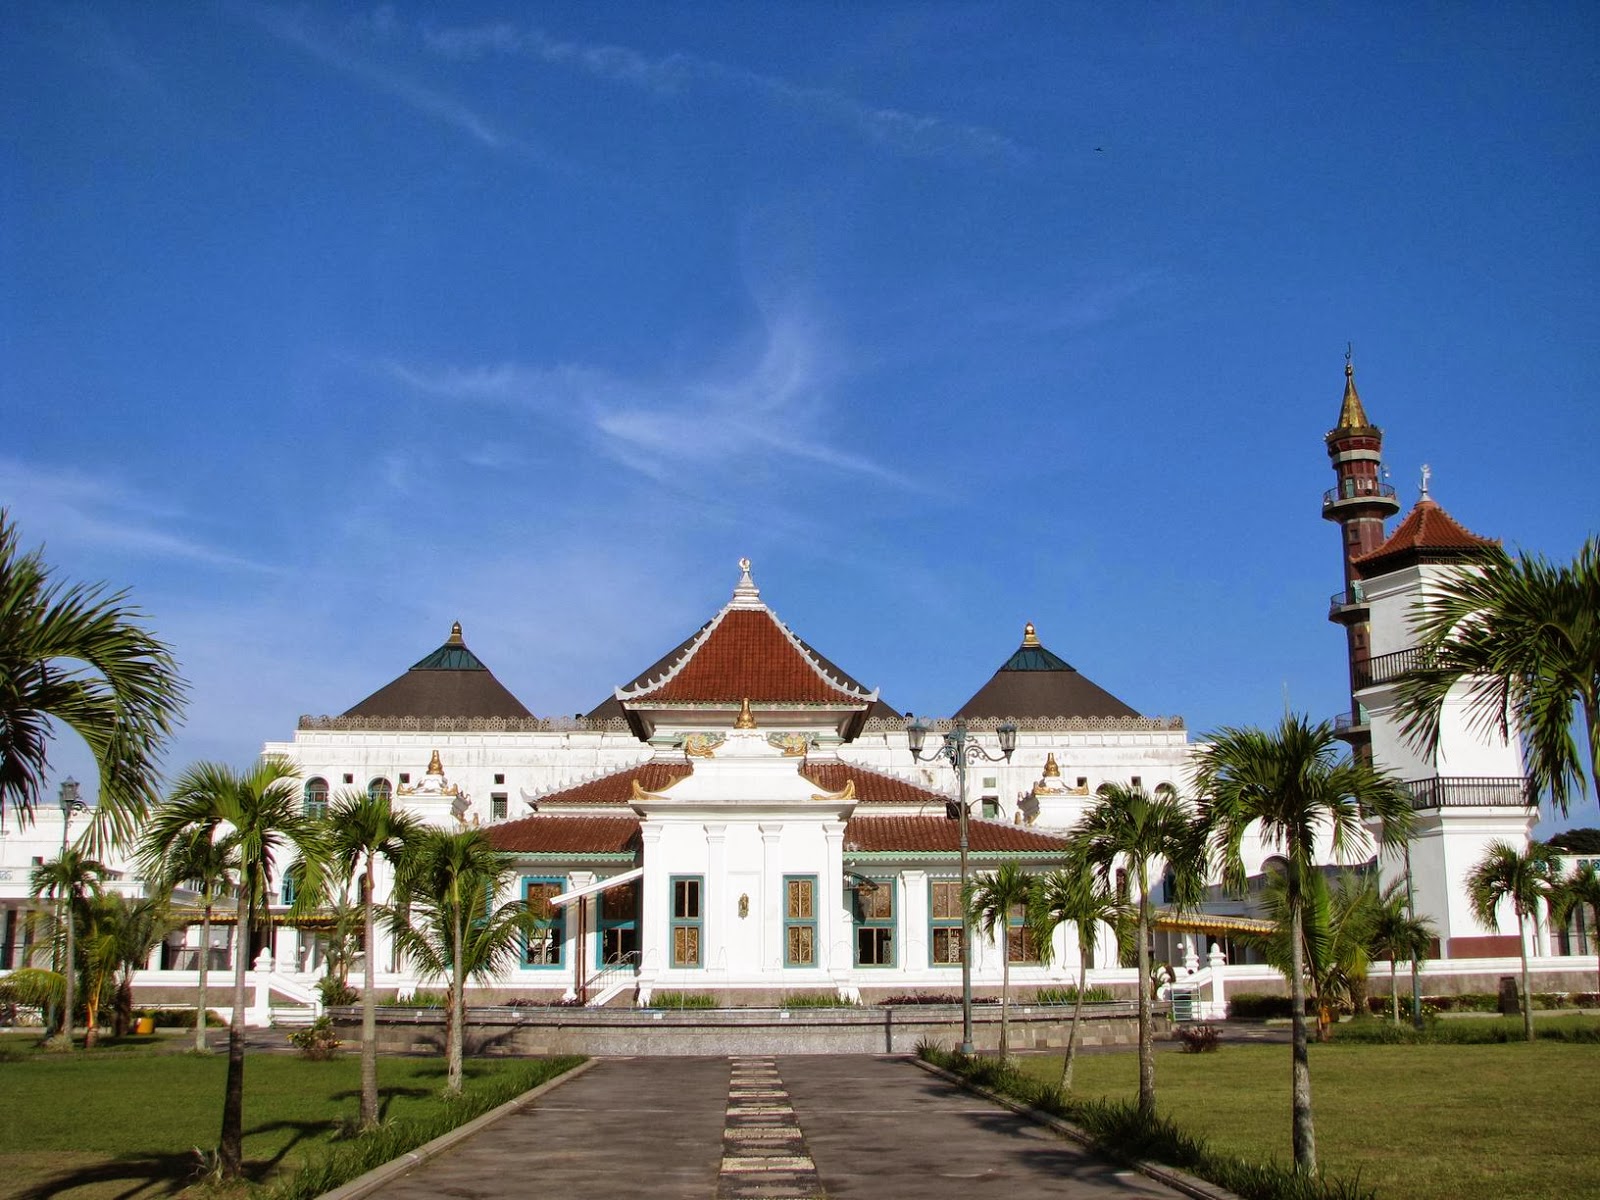 Daftar Tempat Wisata di Palembang Sumatera Selatan  